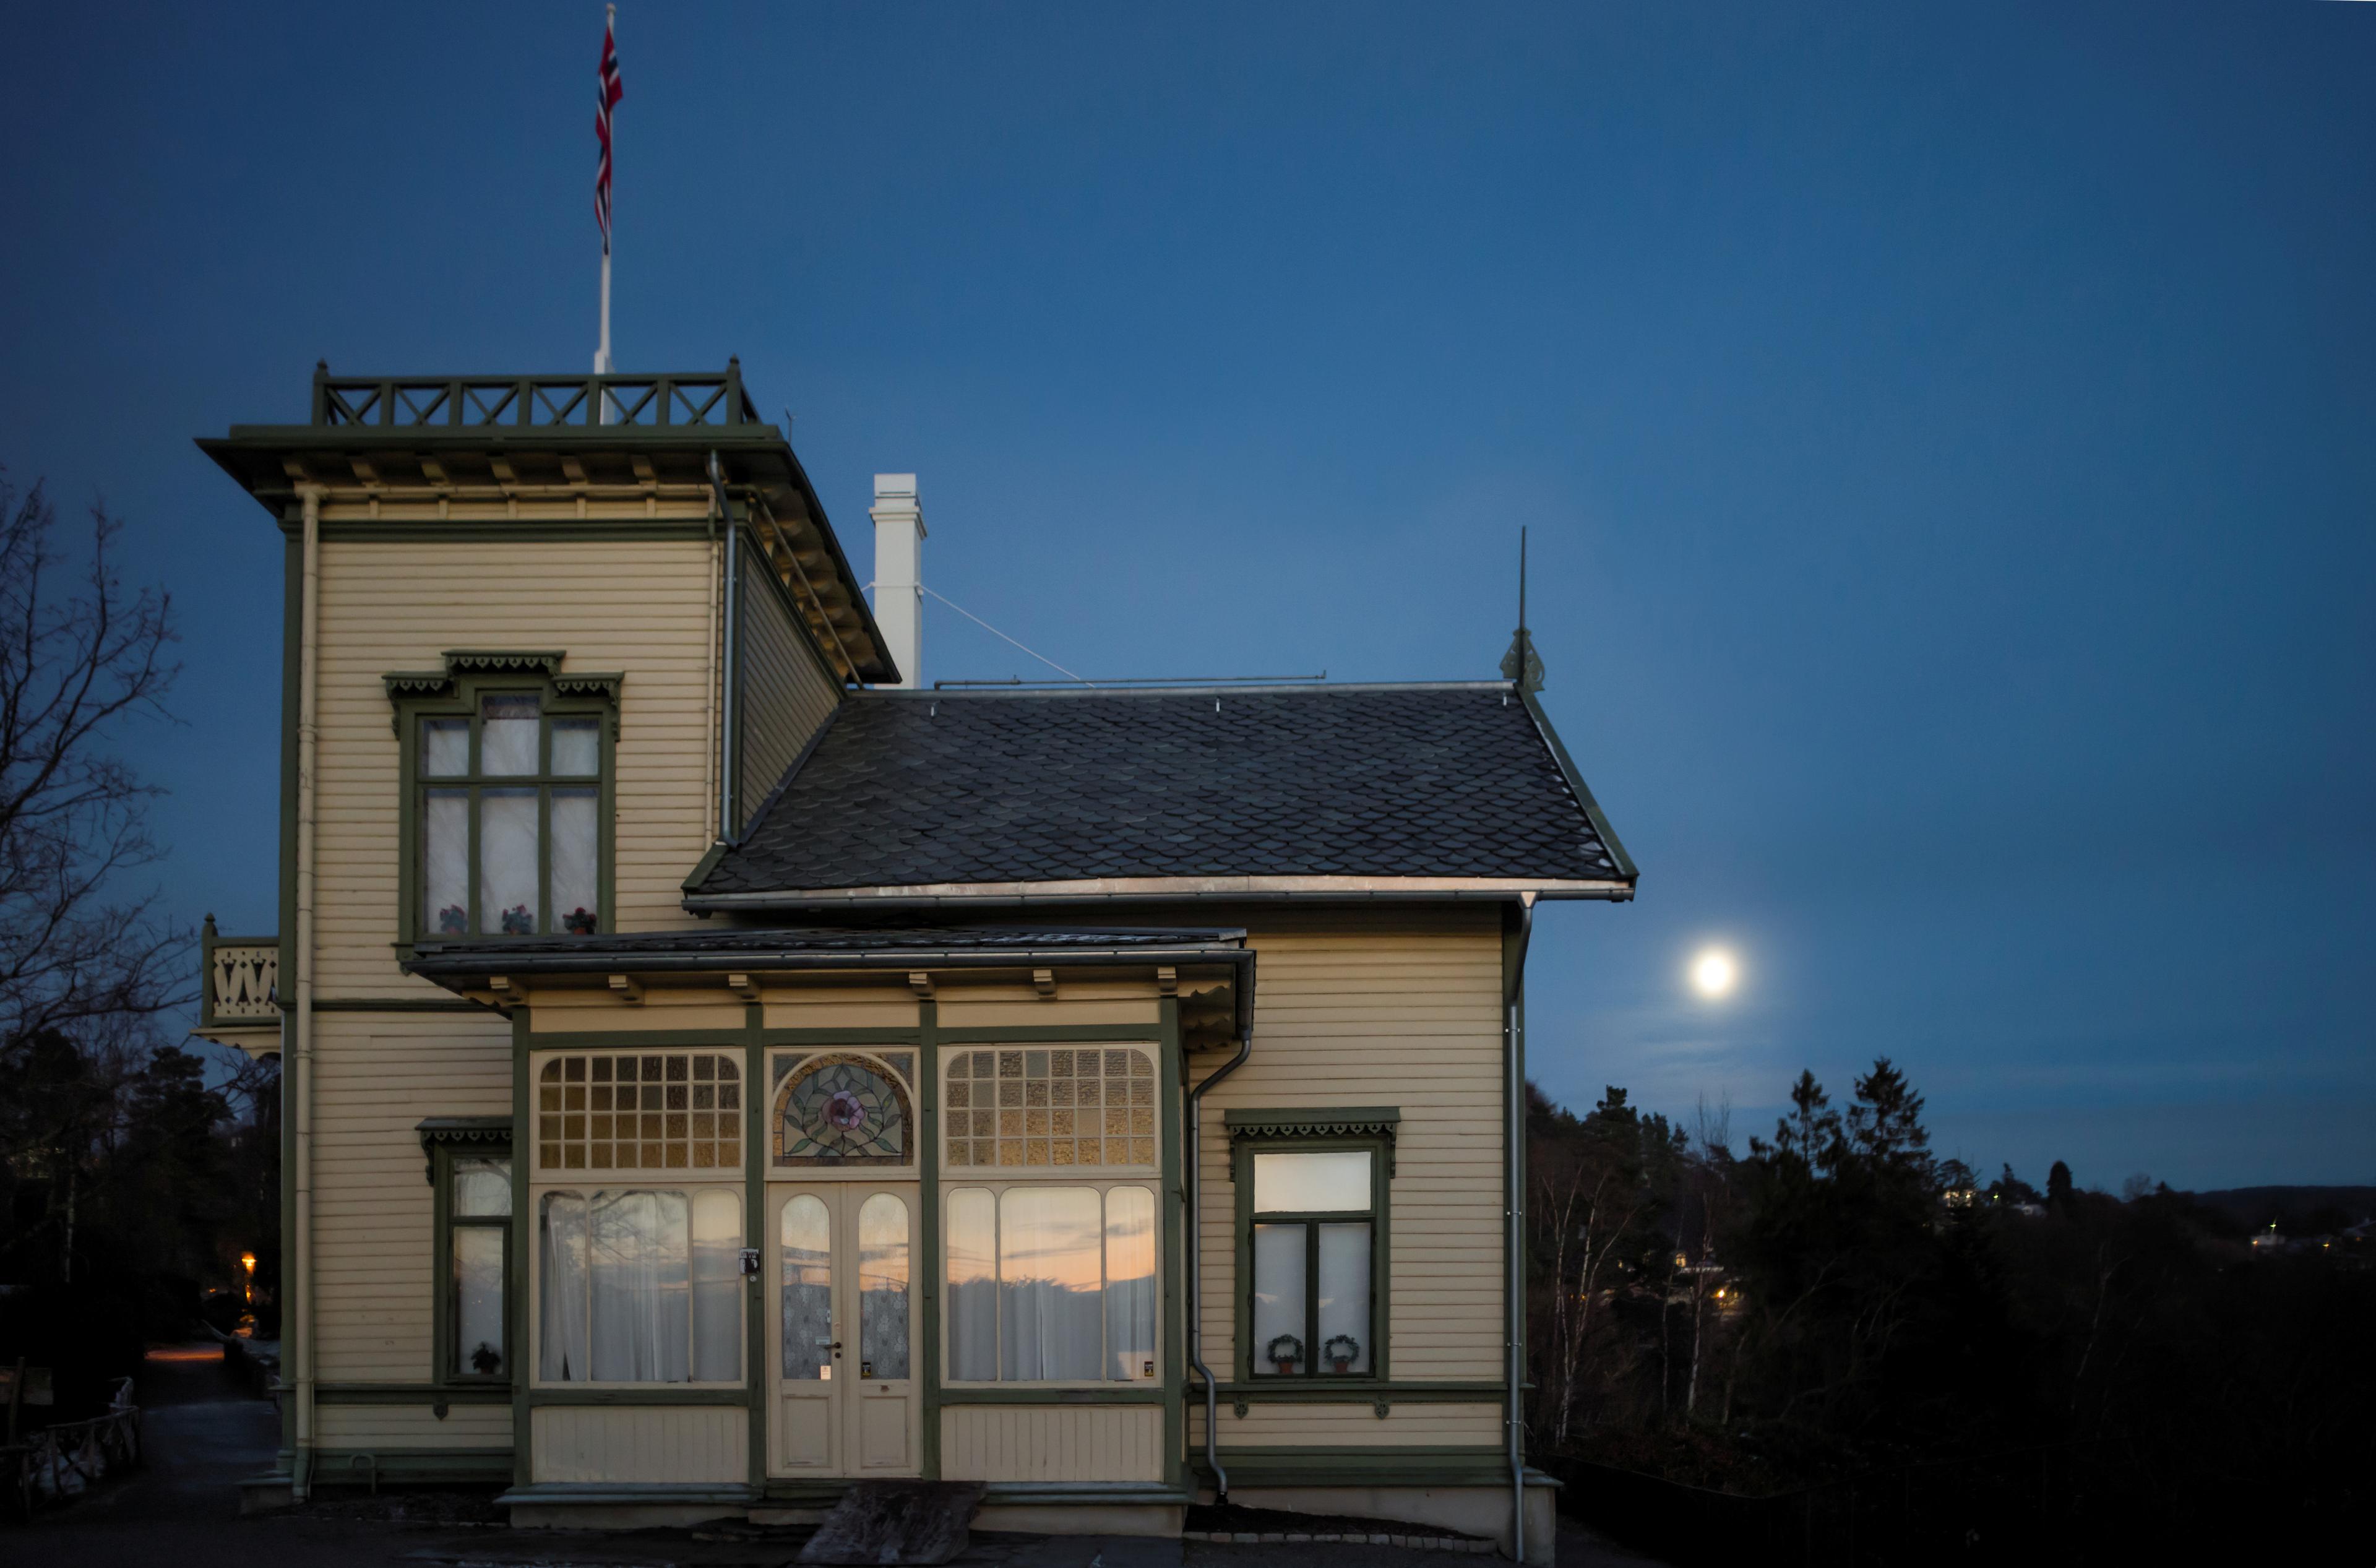 Edvard Grieg´s villa at Troldhaugen, in moonlight at dusk